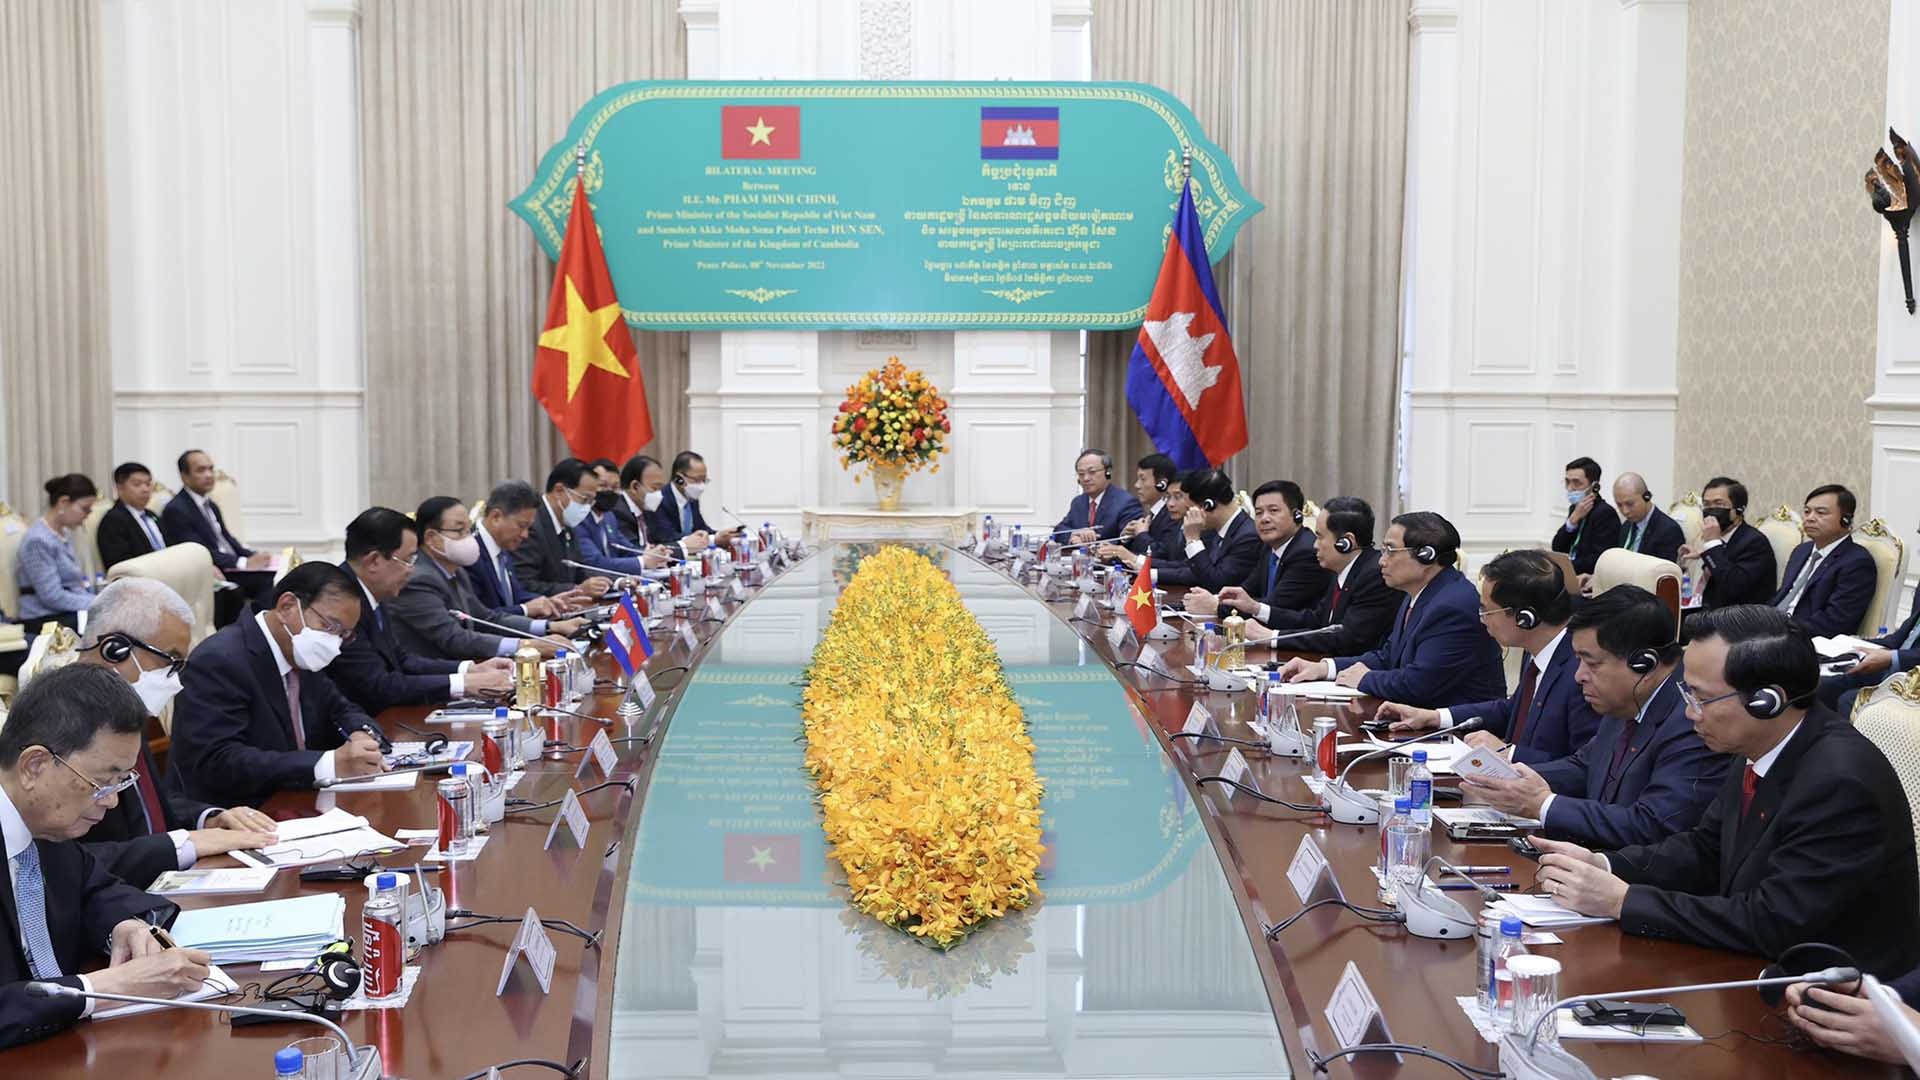 Thủ tướng Chính phủ Phạm Minh Chính hội đàm với Thủ tướng Vương quốc Campuchia Samdech Techo Hun Sen. (Nguồn: VGP)